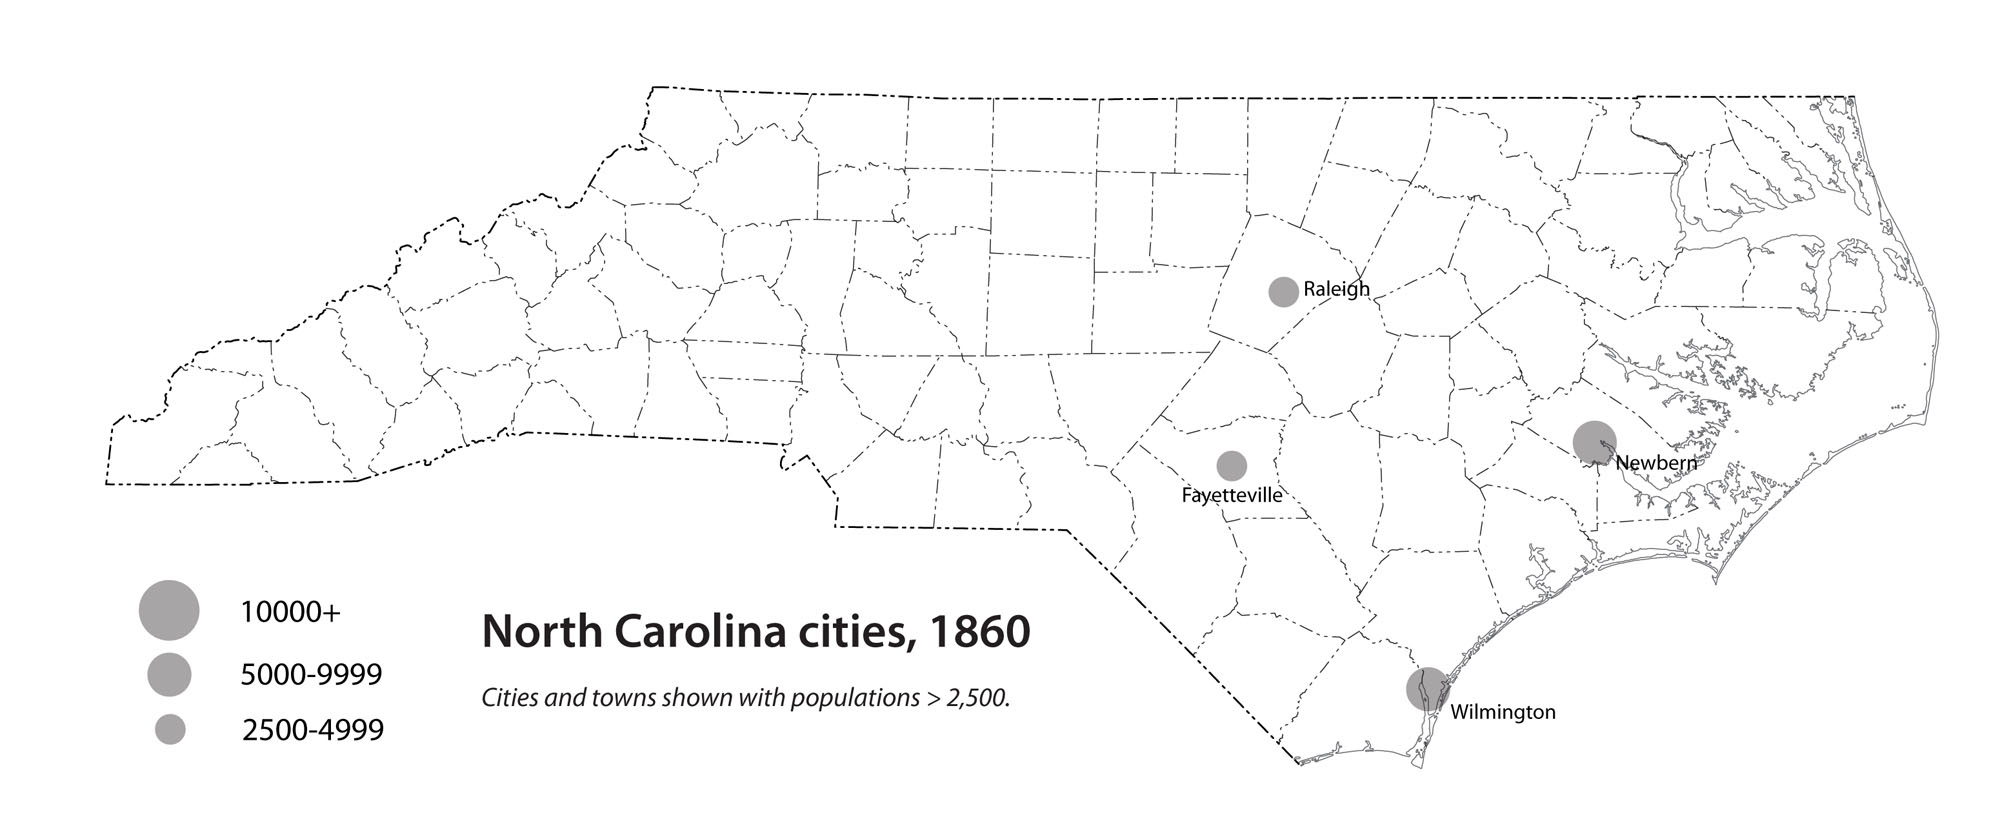 North Carolina cities, 1860